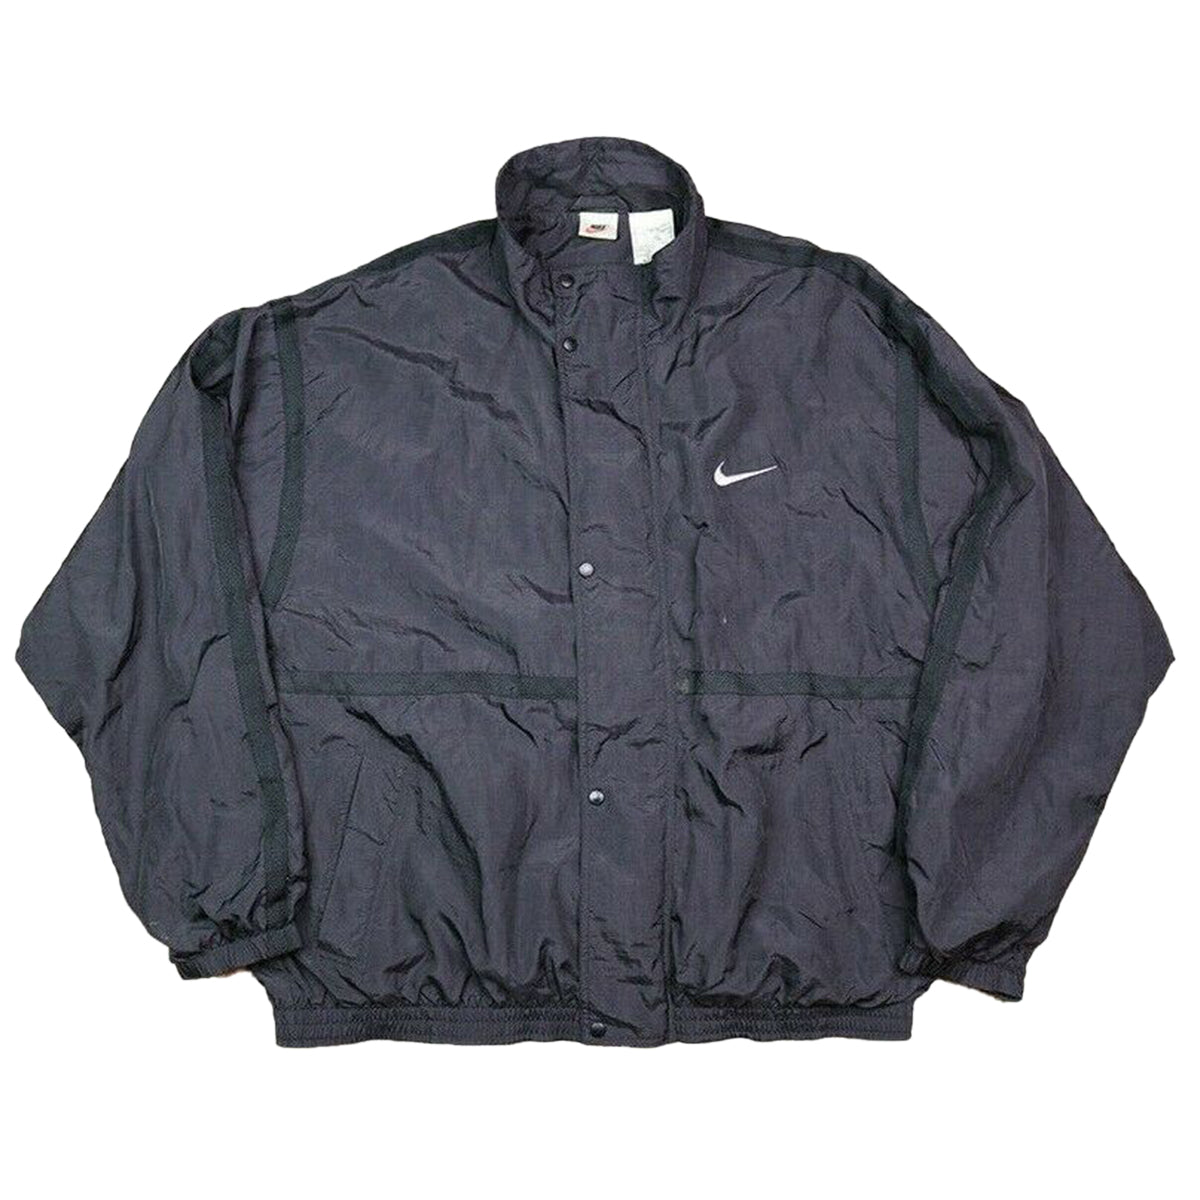 Nike Sportswear Anorak Jacket Mens Style : 832156